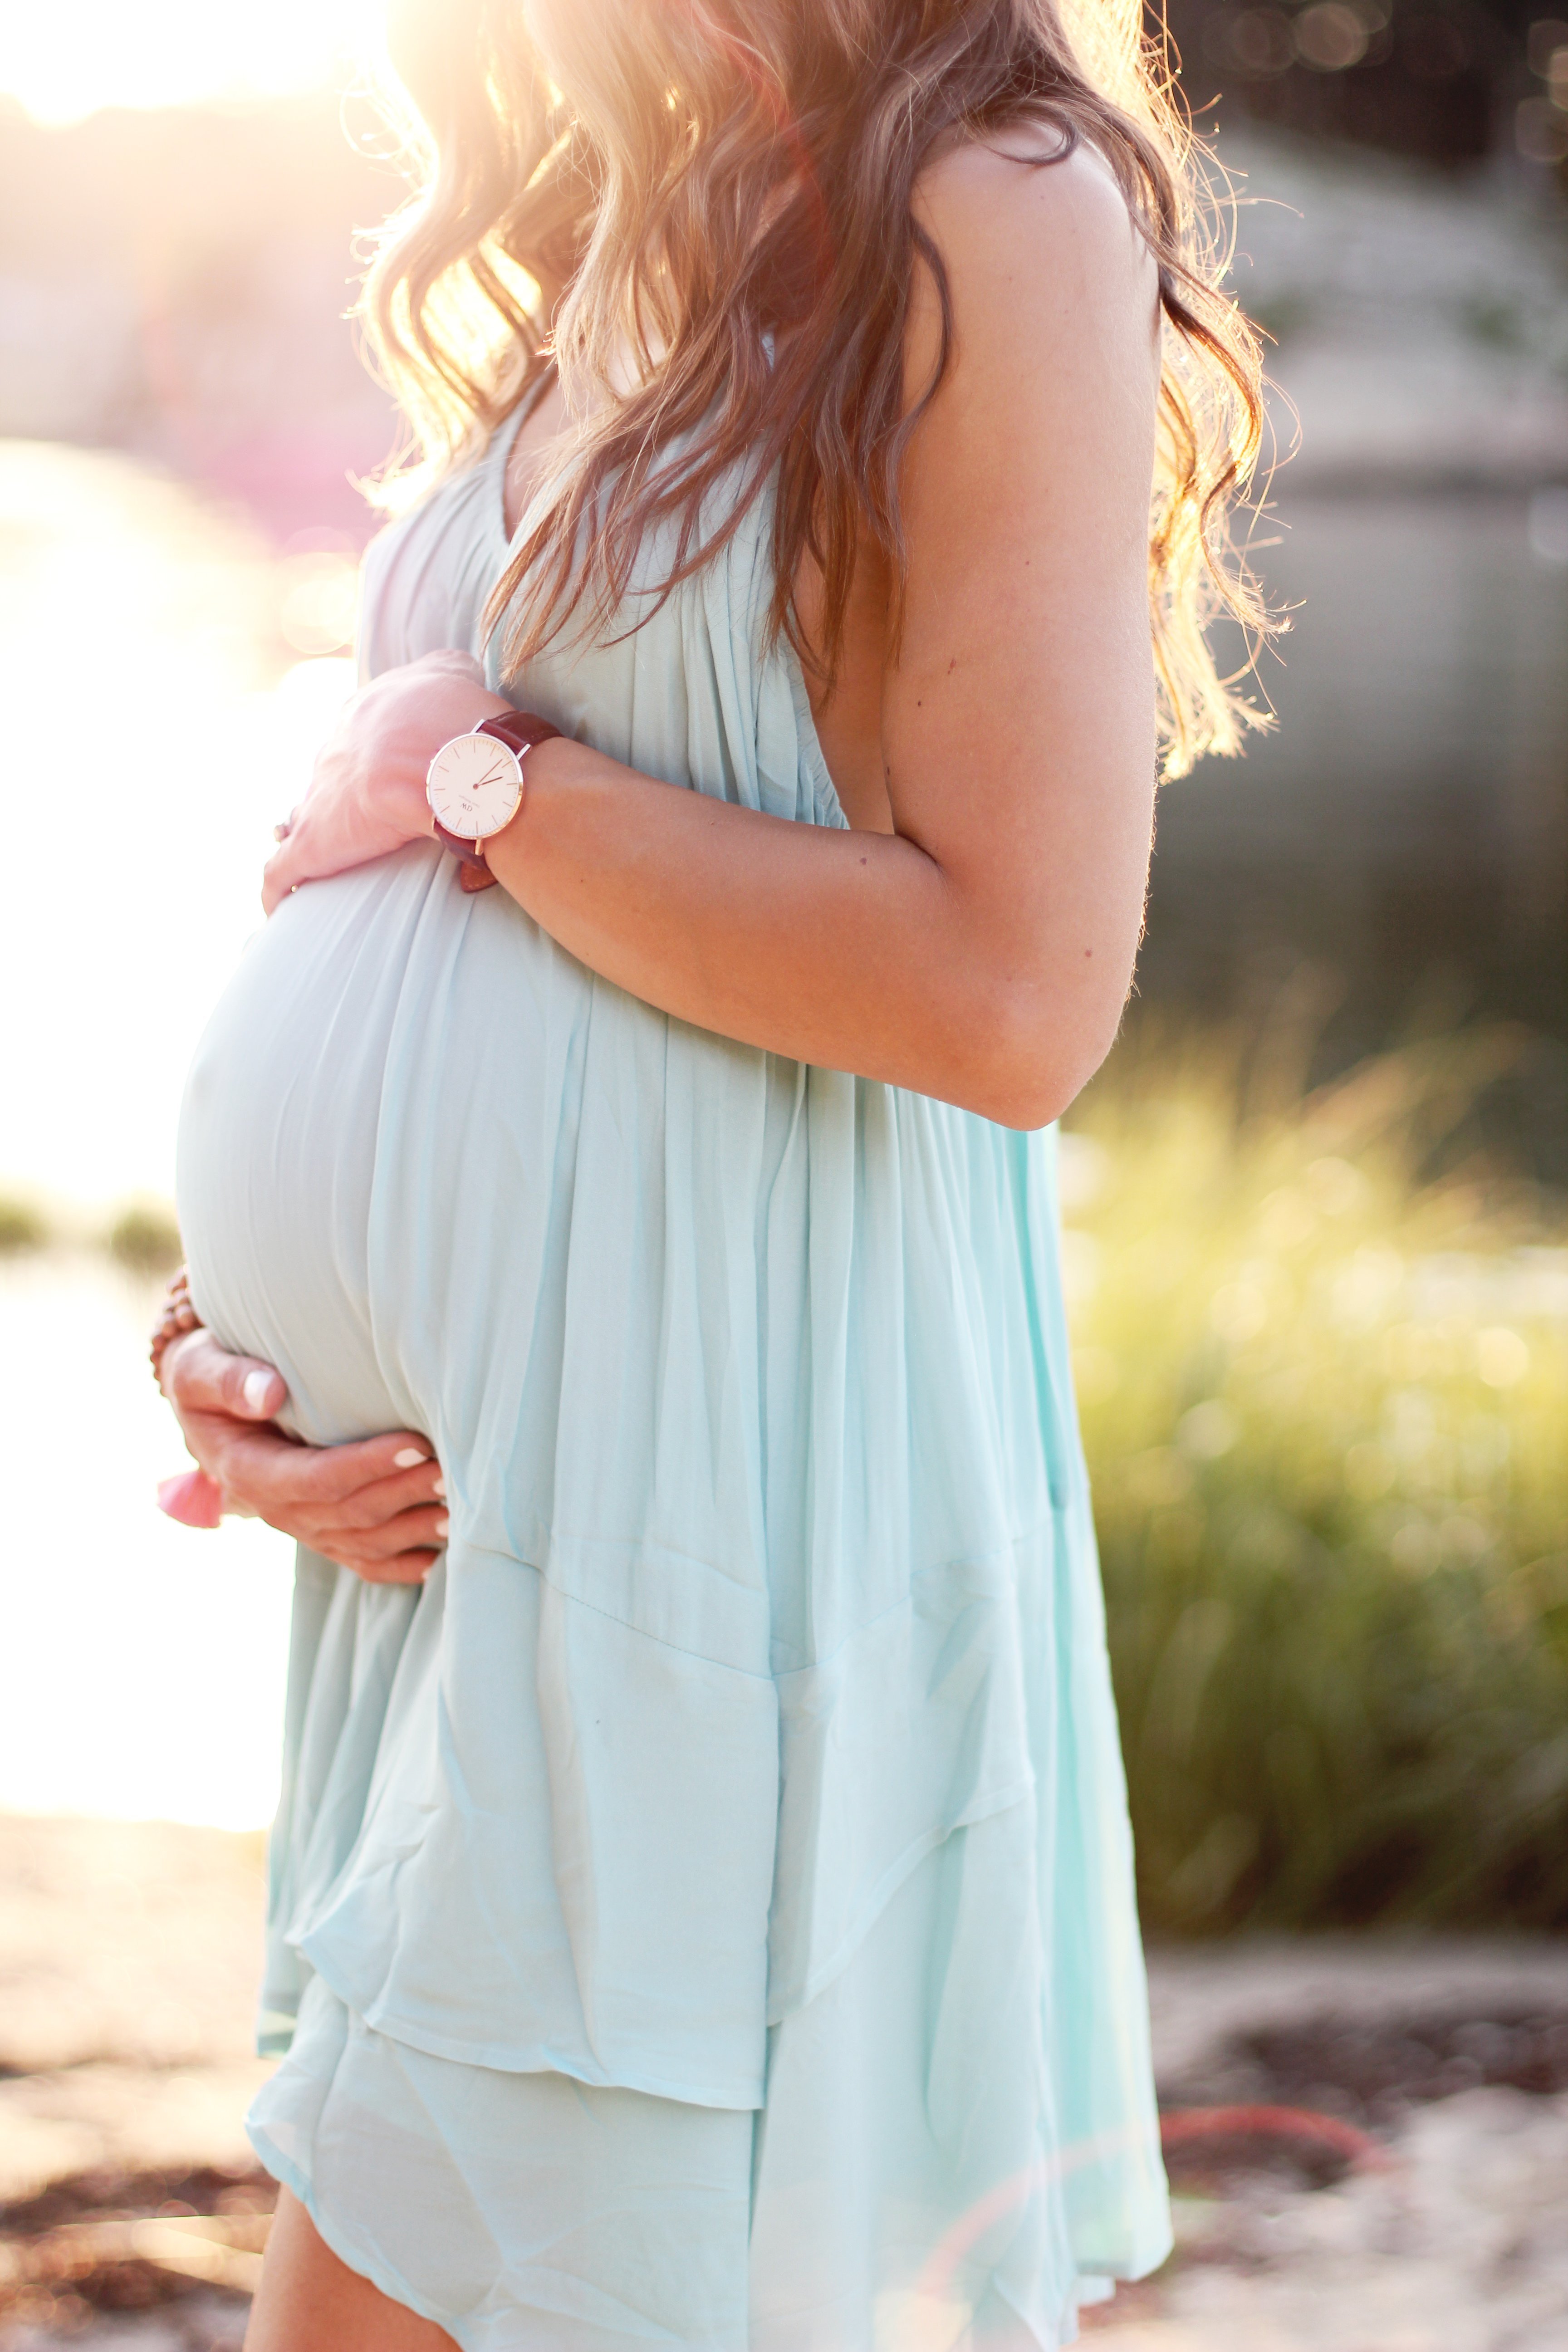 Красивый беременный живот. Красивые беременные девушки. Красивые платья для беременных.